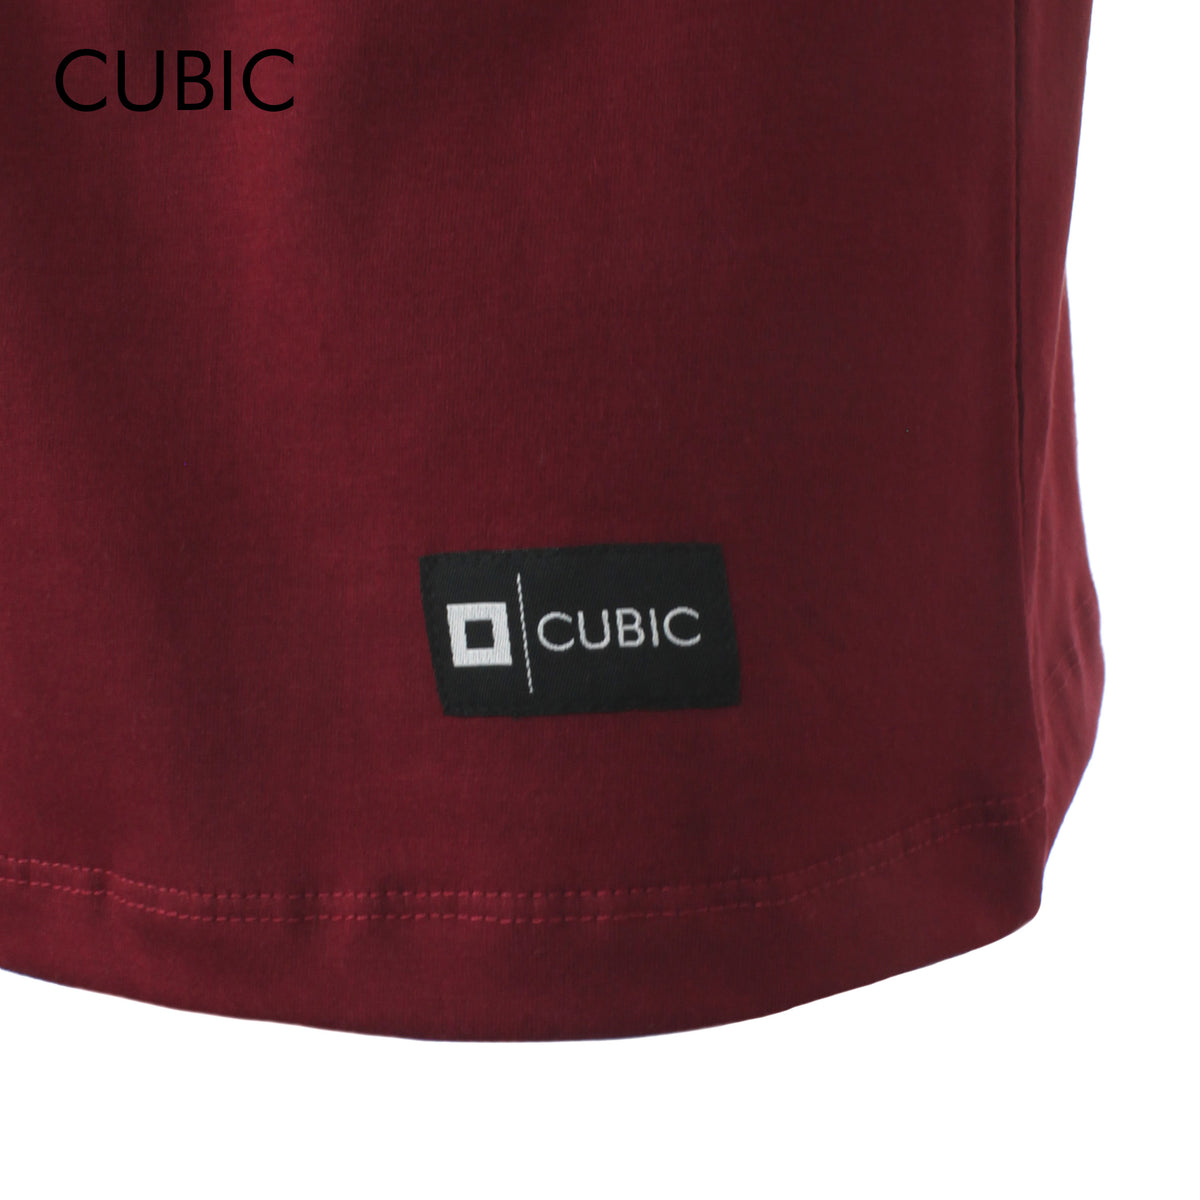 Cubic Men Round Neck Tees T-shirt Plain Shirt Top Top for Men - CMJ2311R